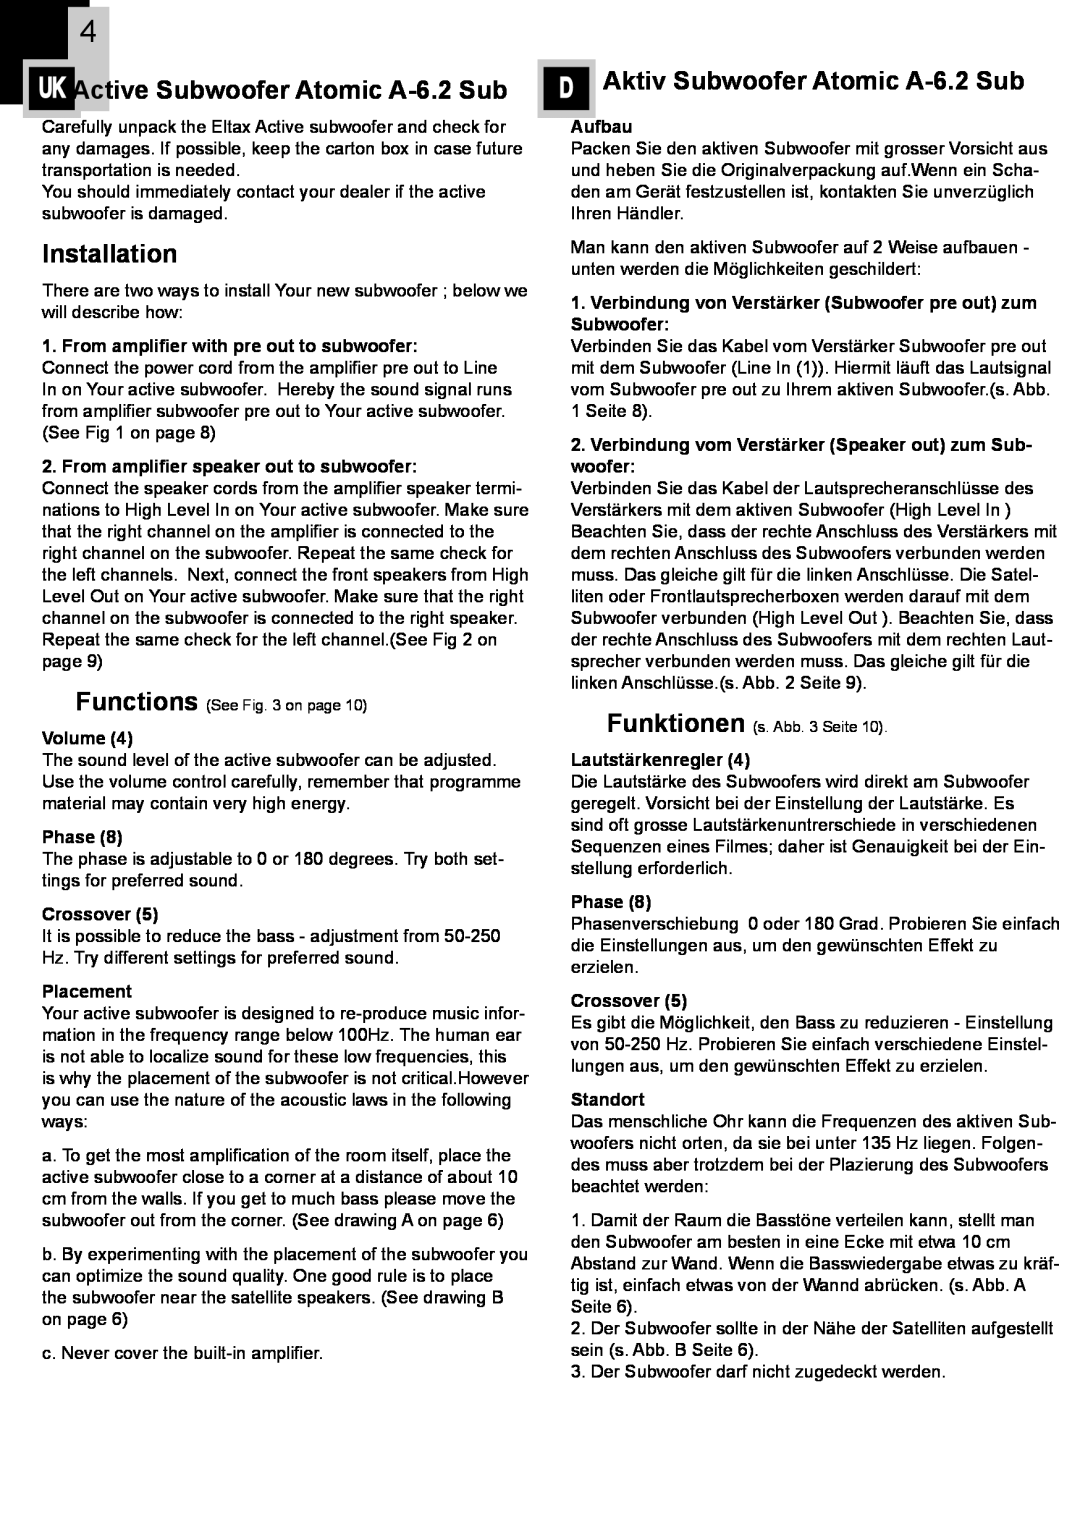 Eltax instruction manual Installation, DAktiv Subwoofer Atomic A-6.2Sub, UK Active Subwoofer Atomic A-6.2Sub 